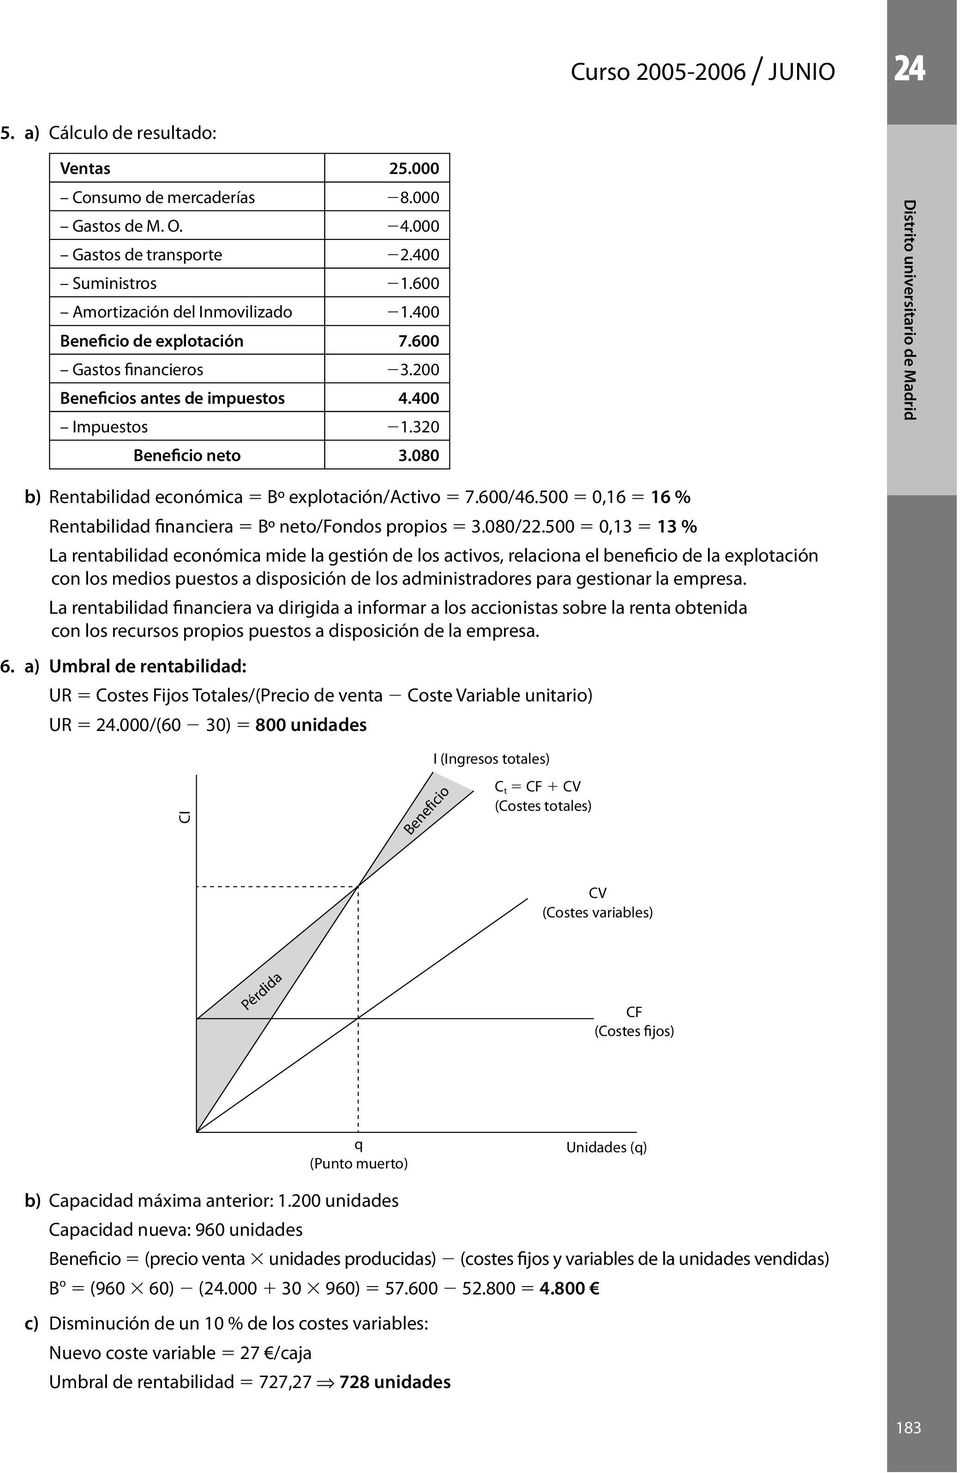 080 Distrito universitario de Madrid b) Rentabilidad económica 5 Bº explotación/activo 5 7.600/46.500 5 0,16 5 16 % Rentabilidad financiera 5 Bº neto/fondos propios 5 3.080/22.